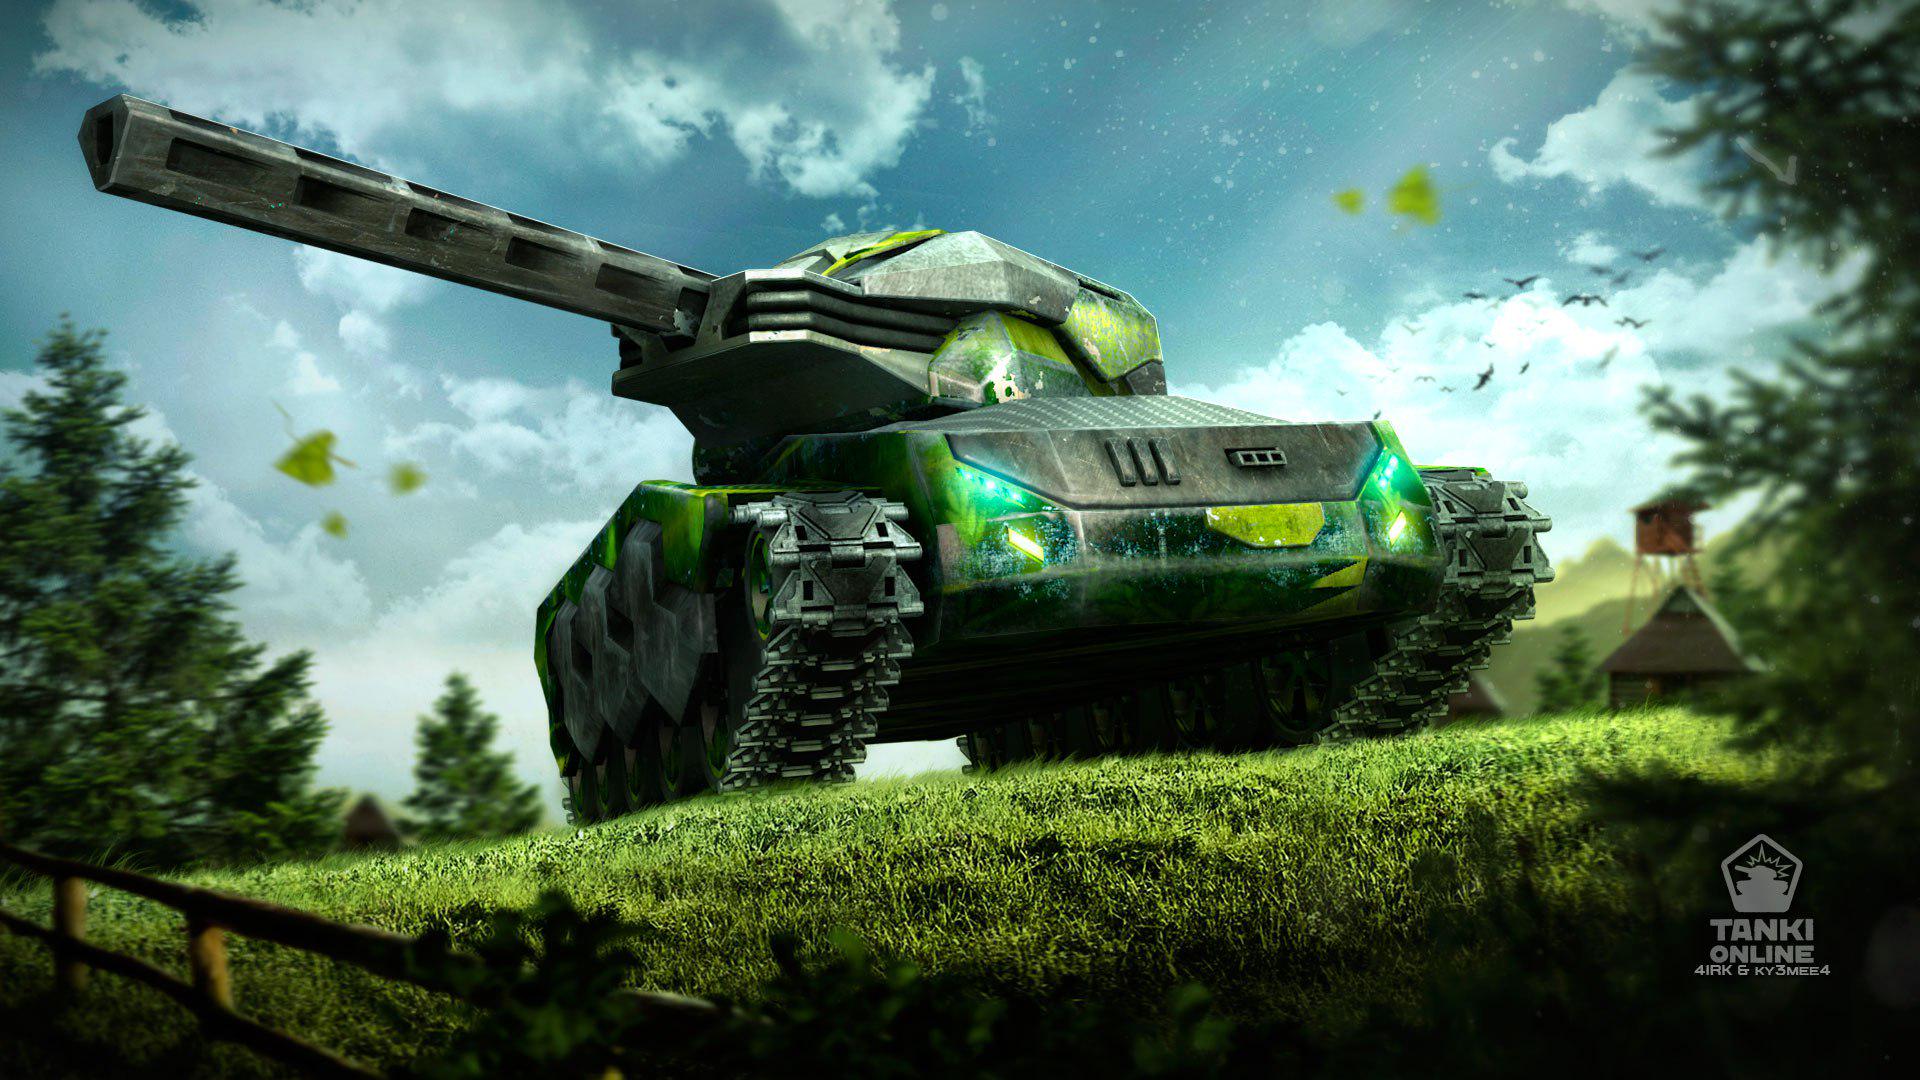 tanki wallpaper,land vehicle,vehicle,combat vehicle,tank,pc game